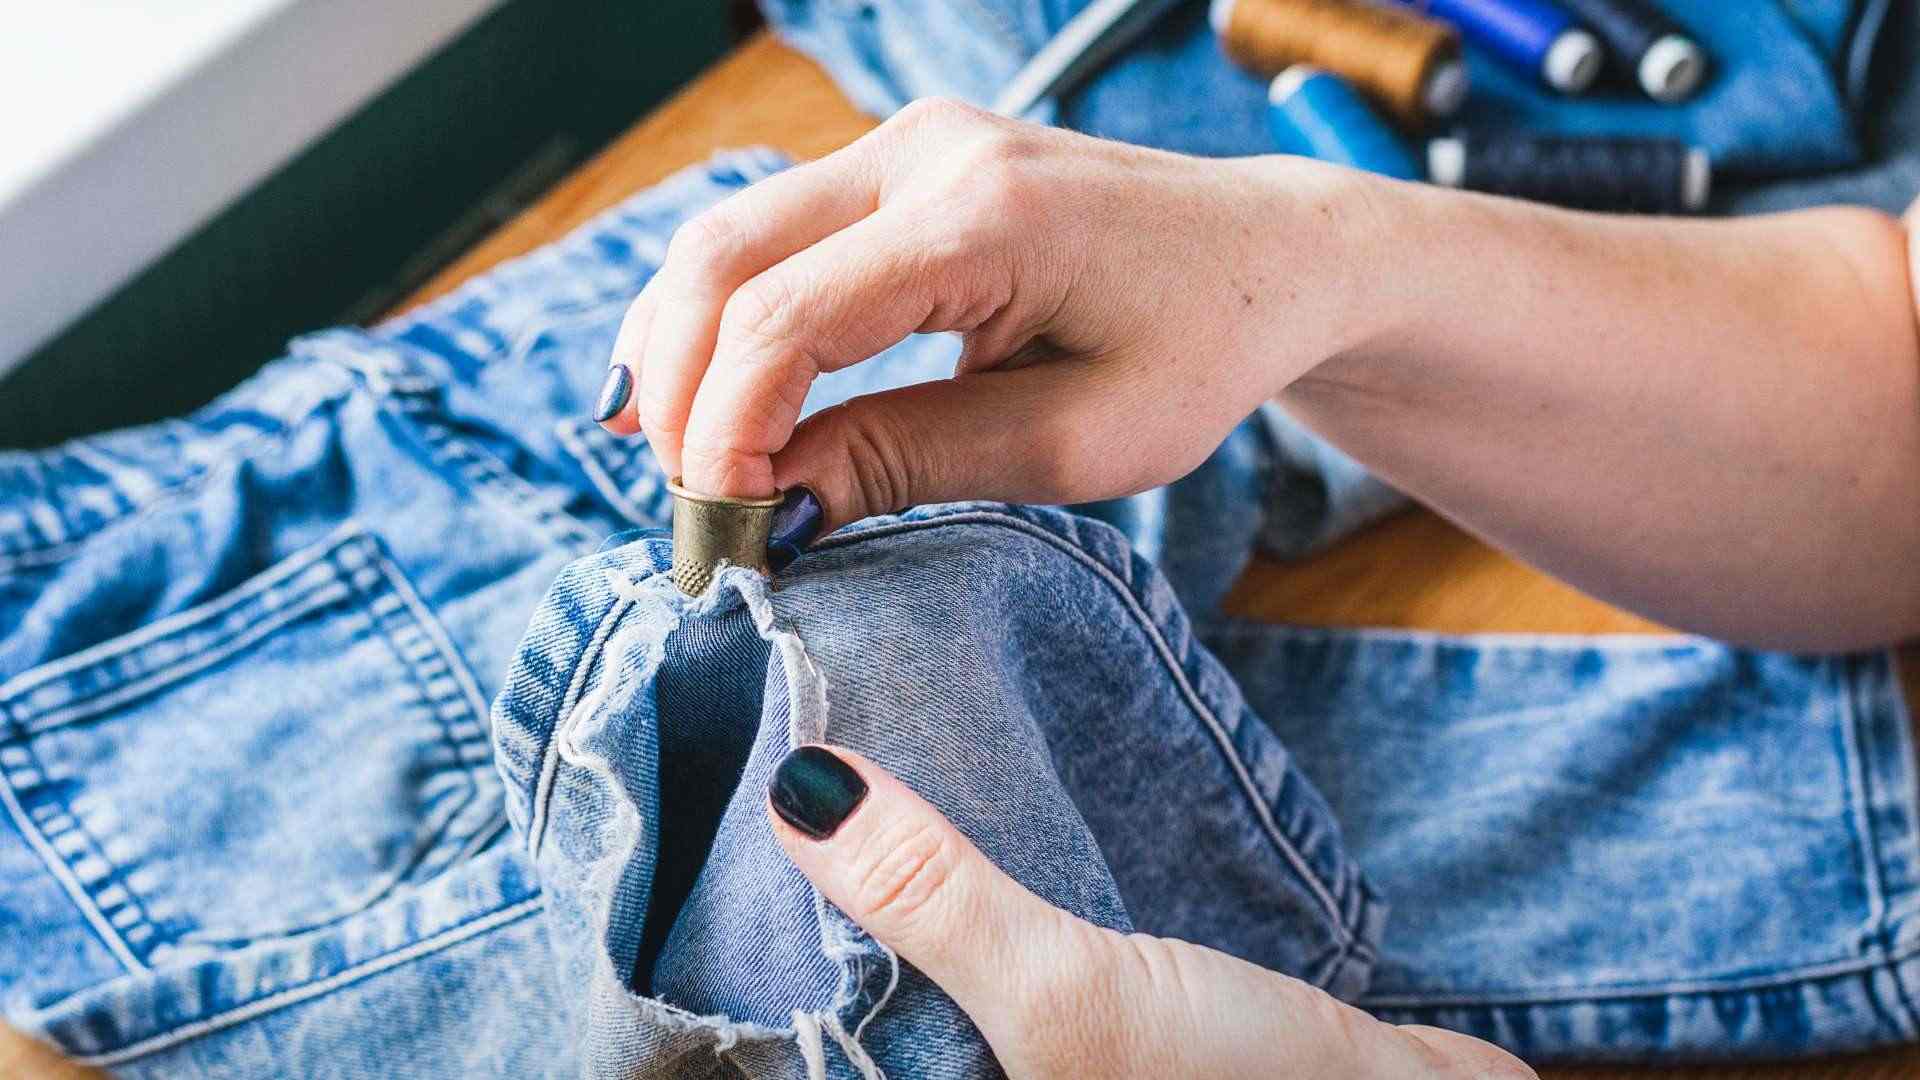 5 noves idees per reciclar texans vells que no havies vist abans